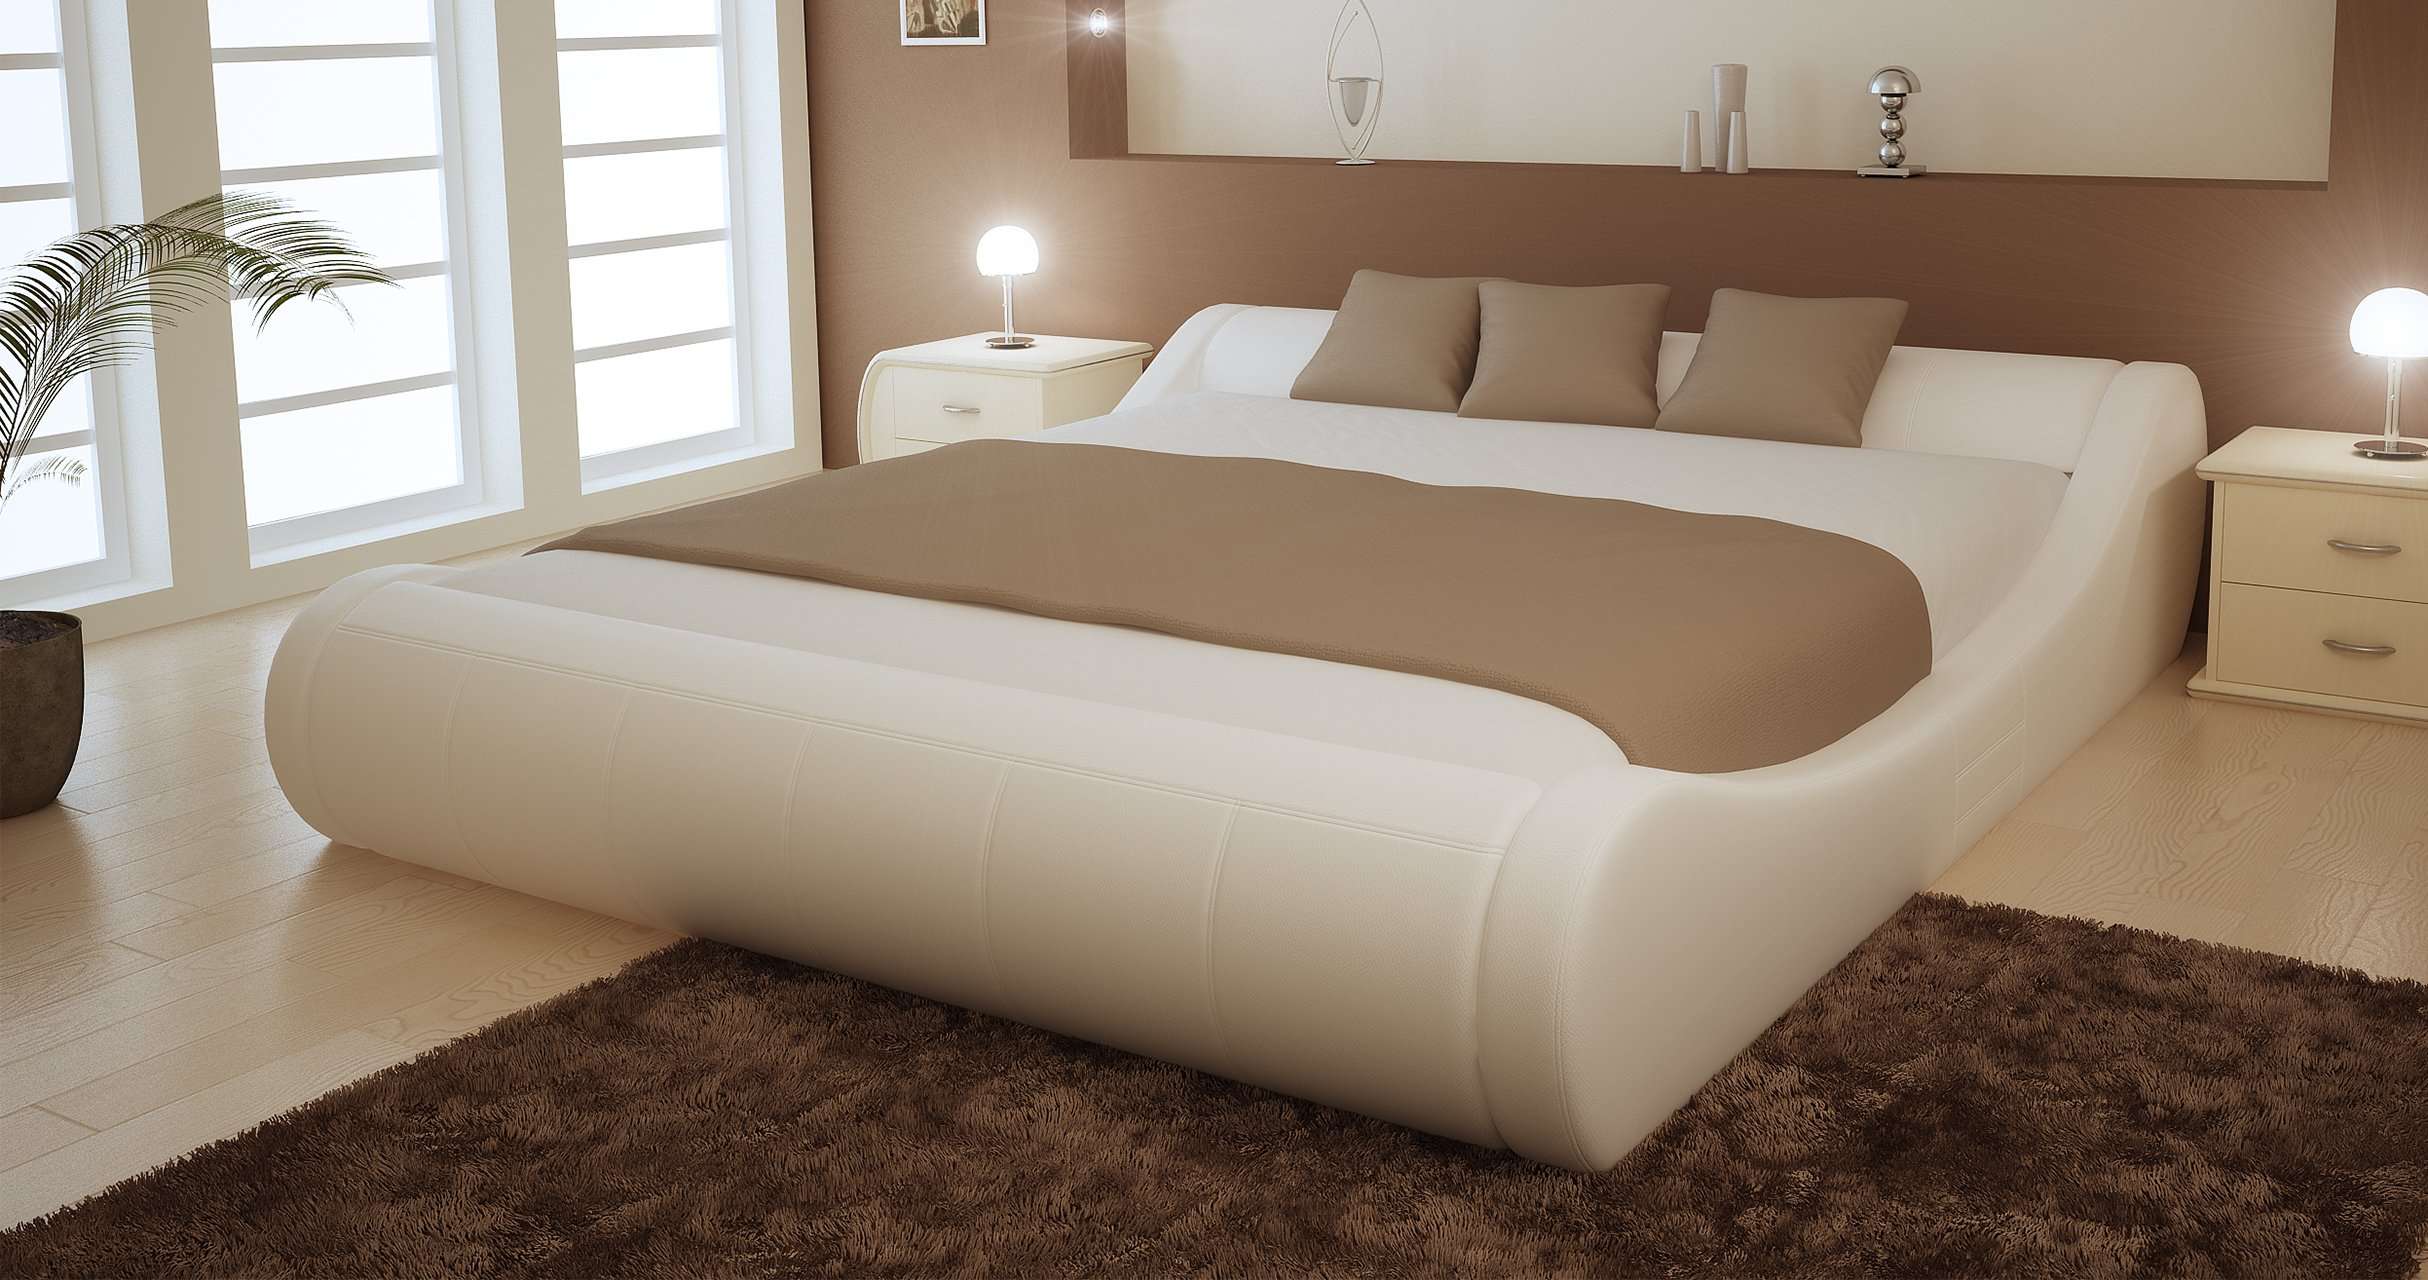 Кровати двух метров. Кровать Маура братьев Баженовых. Кровать Кассия братьев Баженовых. Большая двуспальная кровать. Красивая кровать двуспальная.